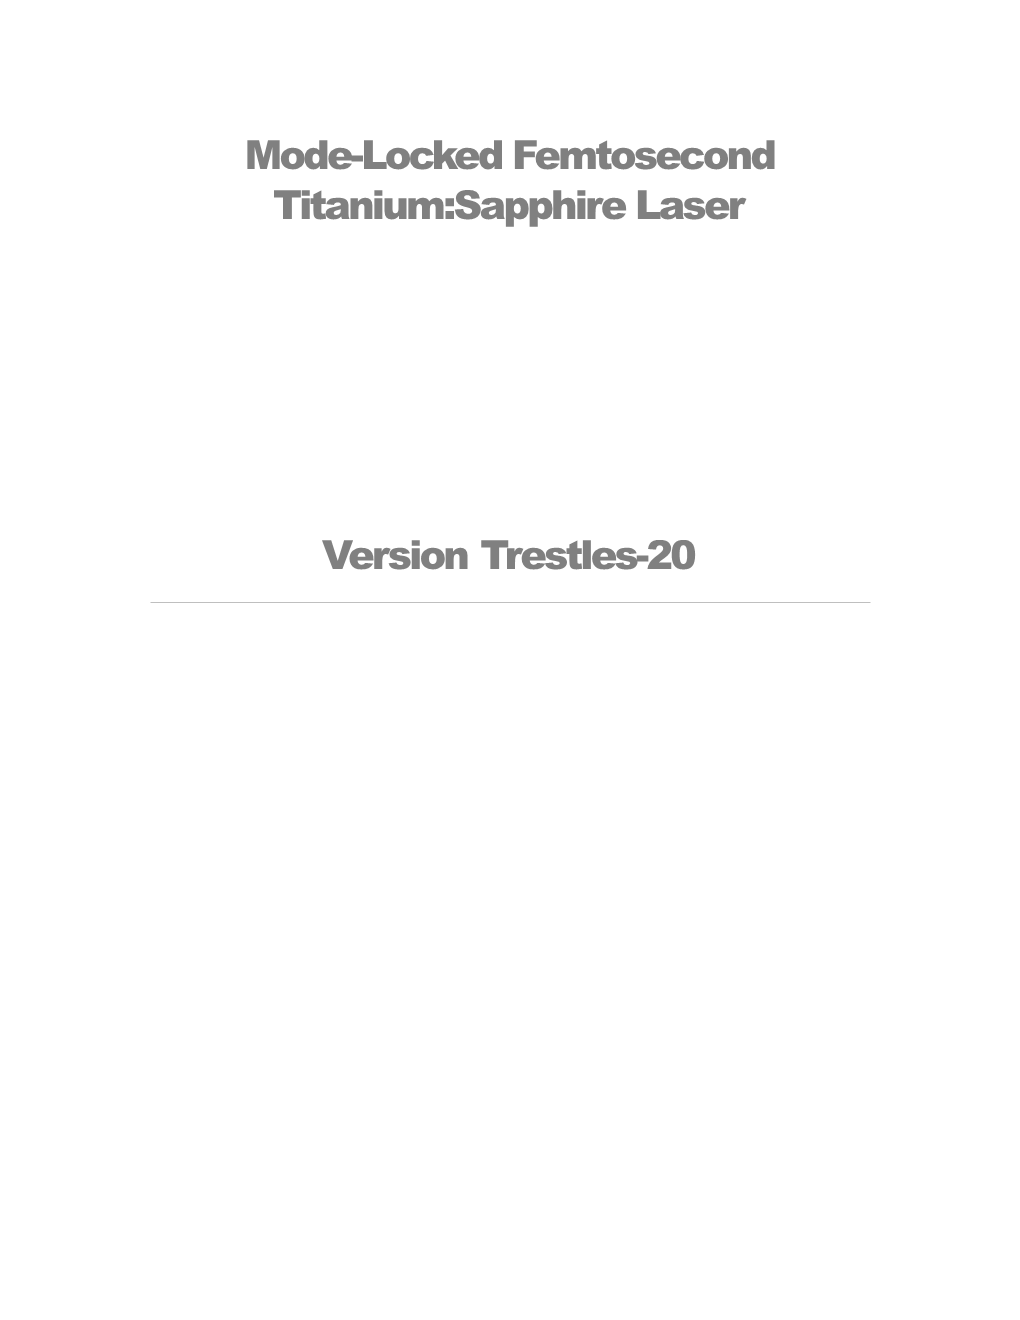 Femtosecond Ti:Sapphire Laser Trestles-20 Manual